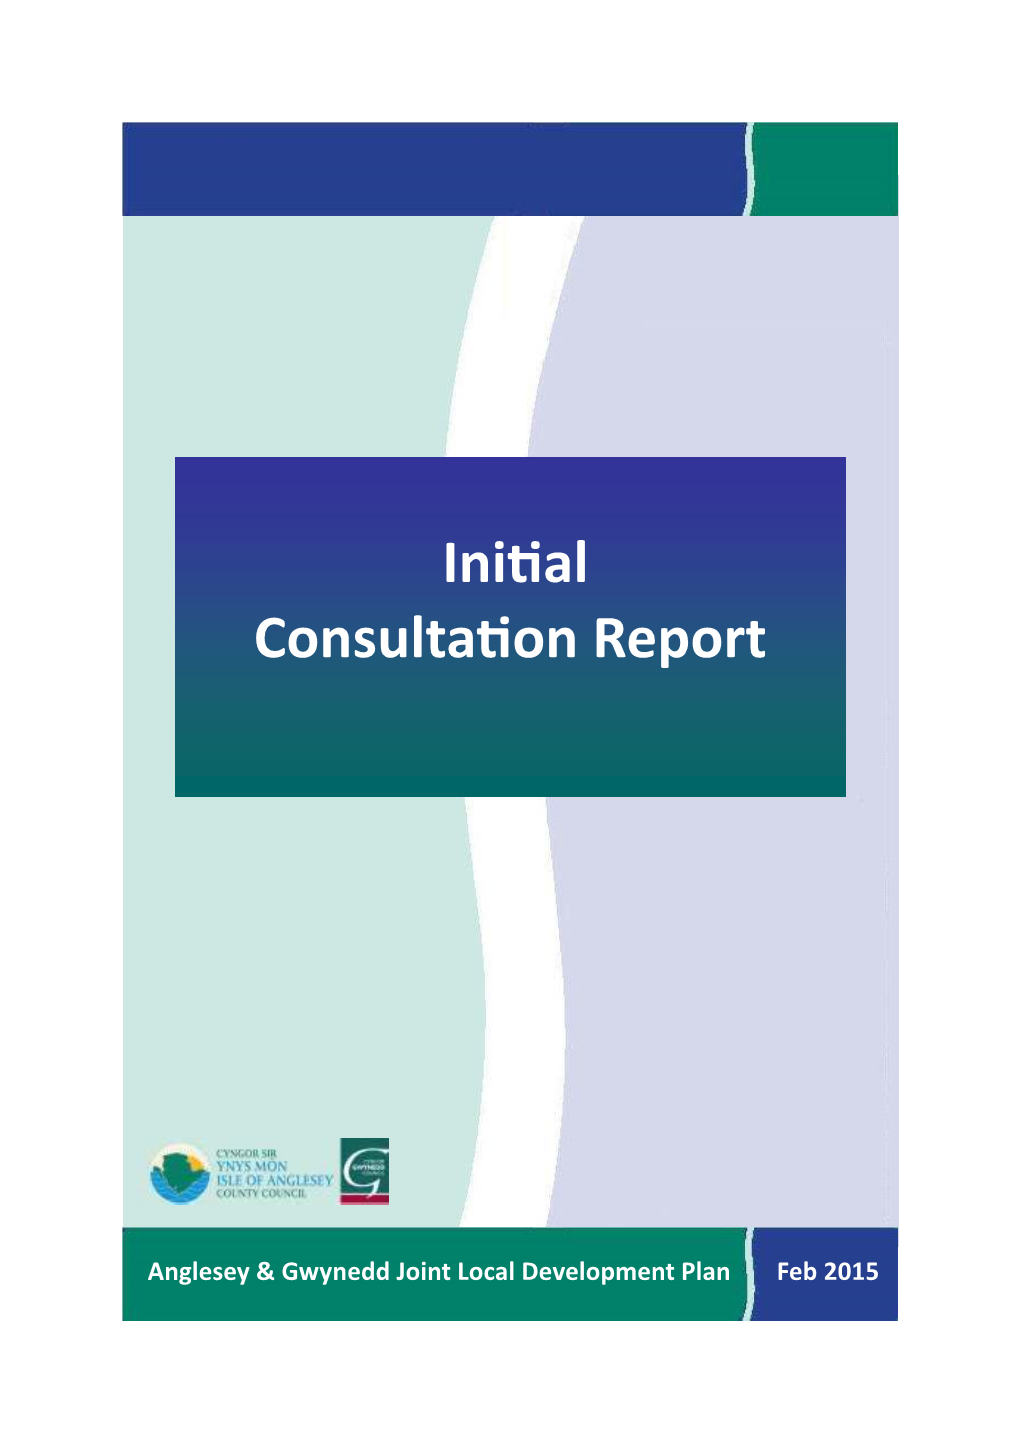 Preliminary Consultation Report